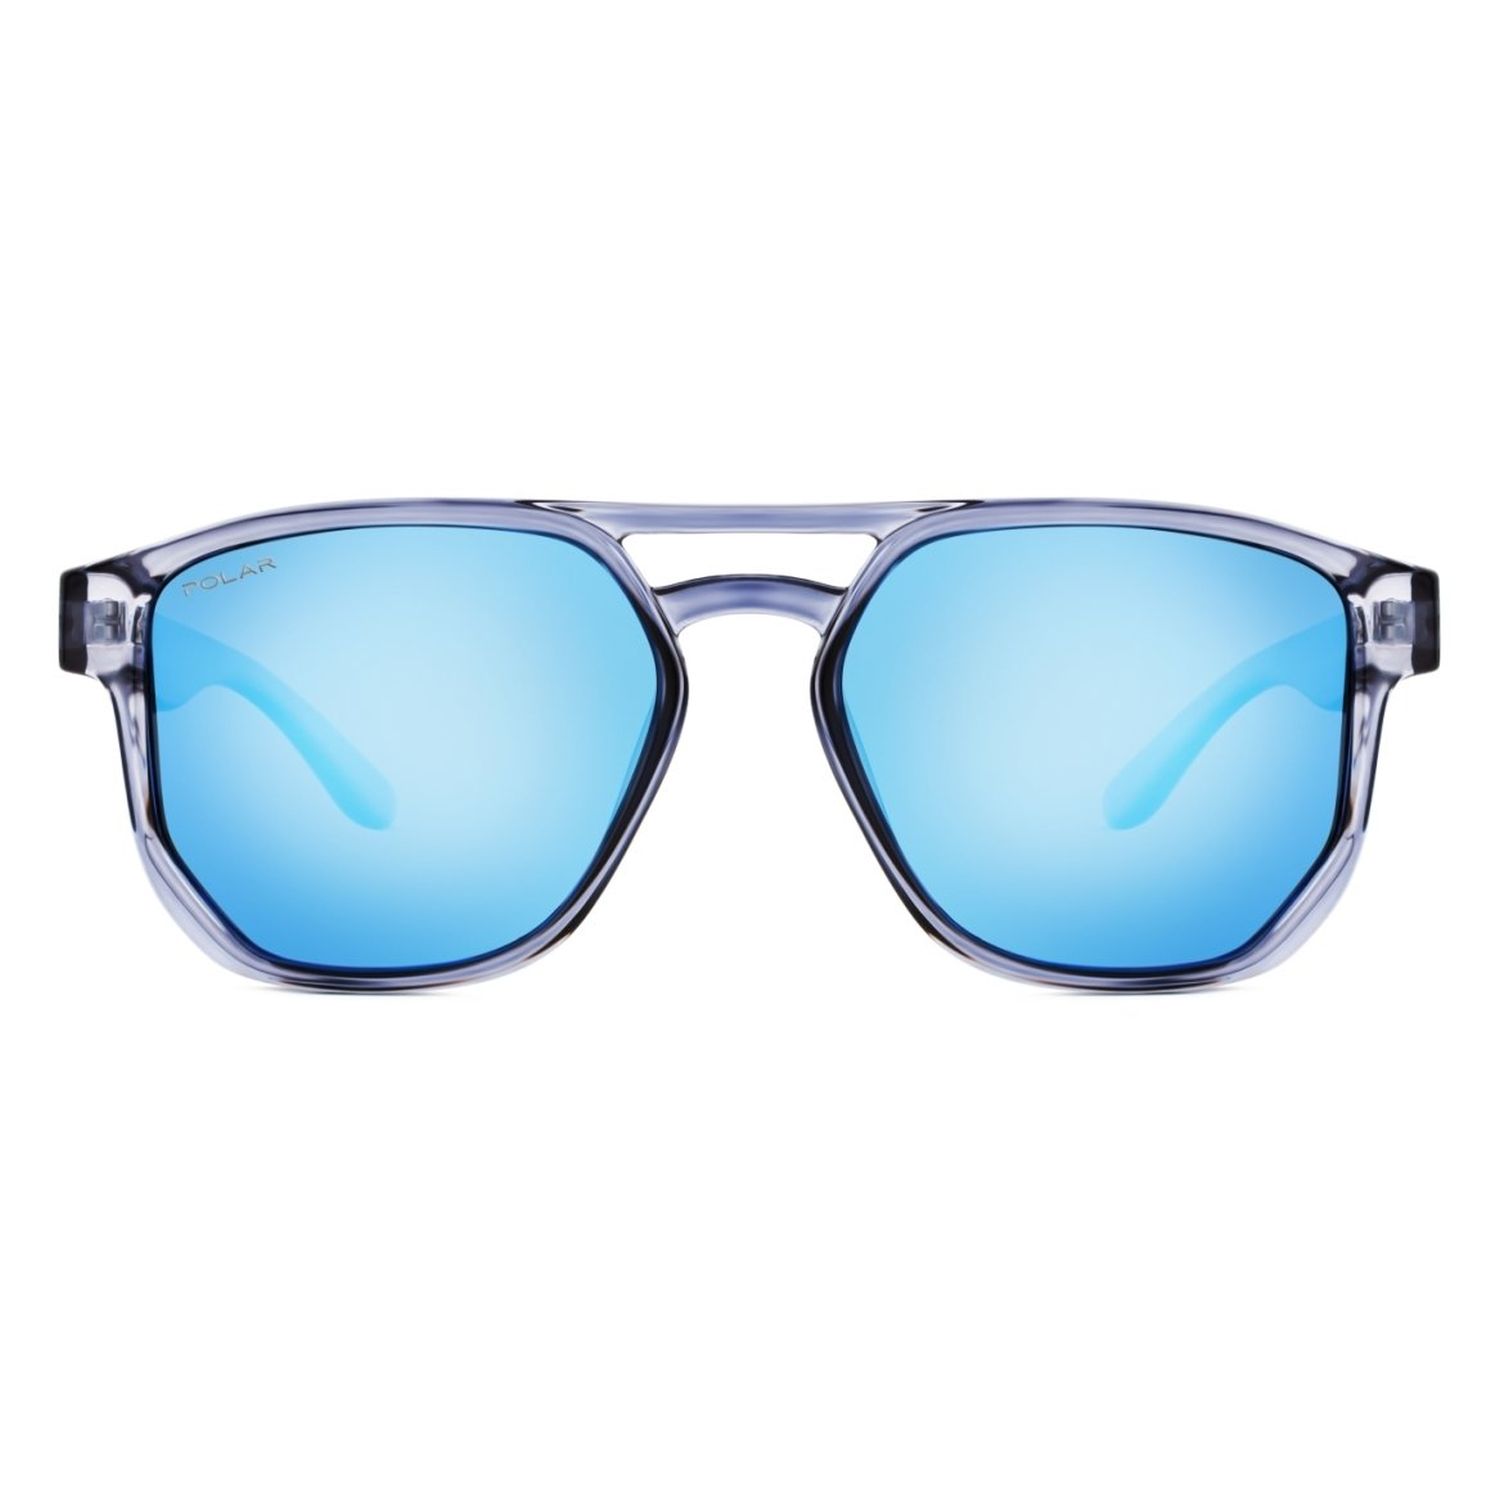 Gafas de Sunglasses POLAR 4005 en color gris calibre 53 Polarizadas - Óptica Doñana Visión